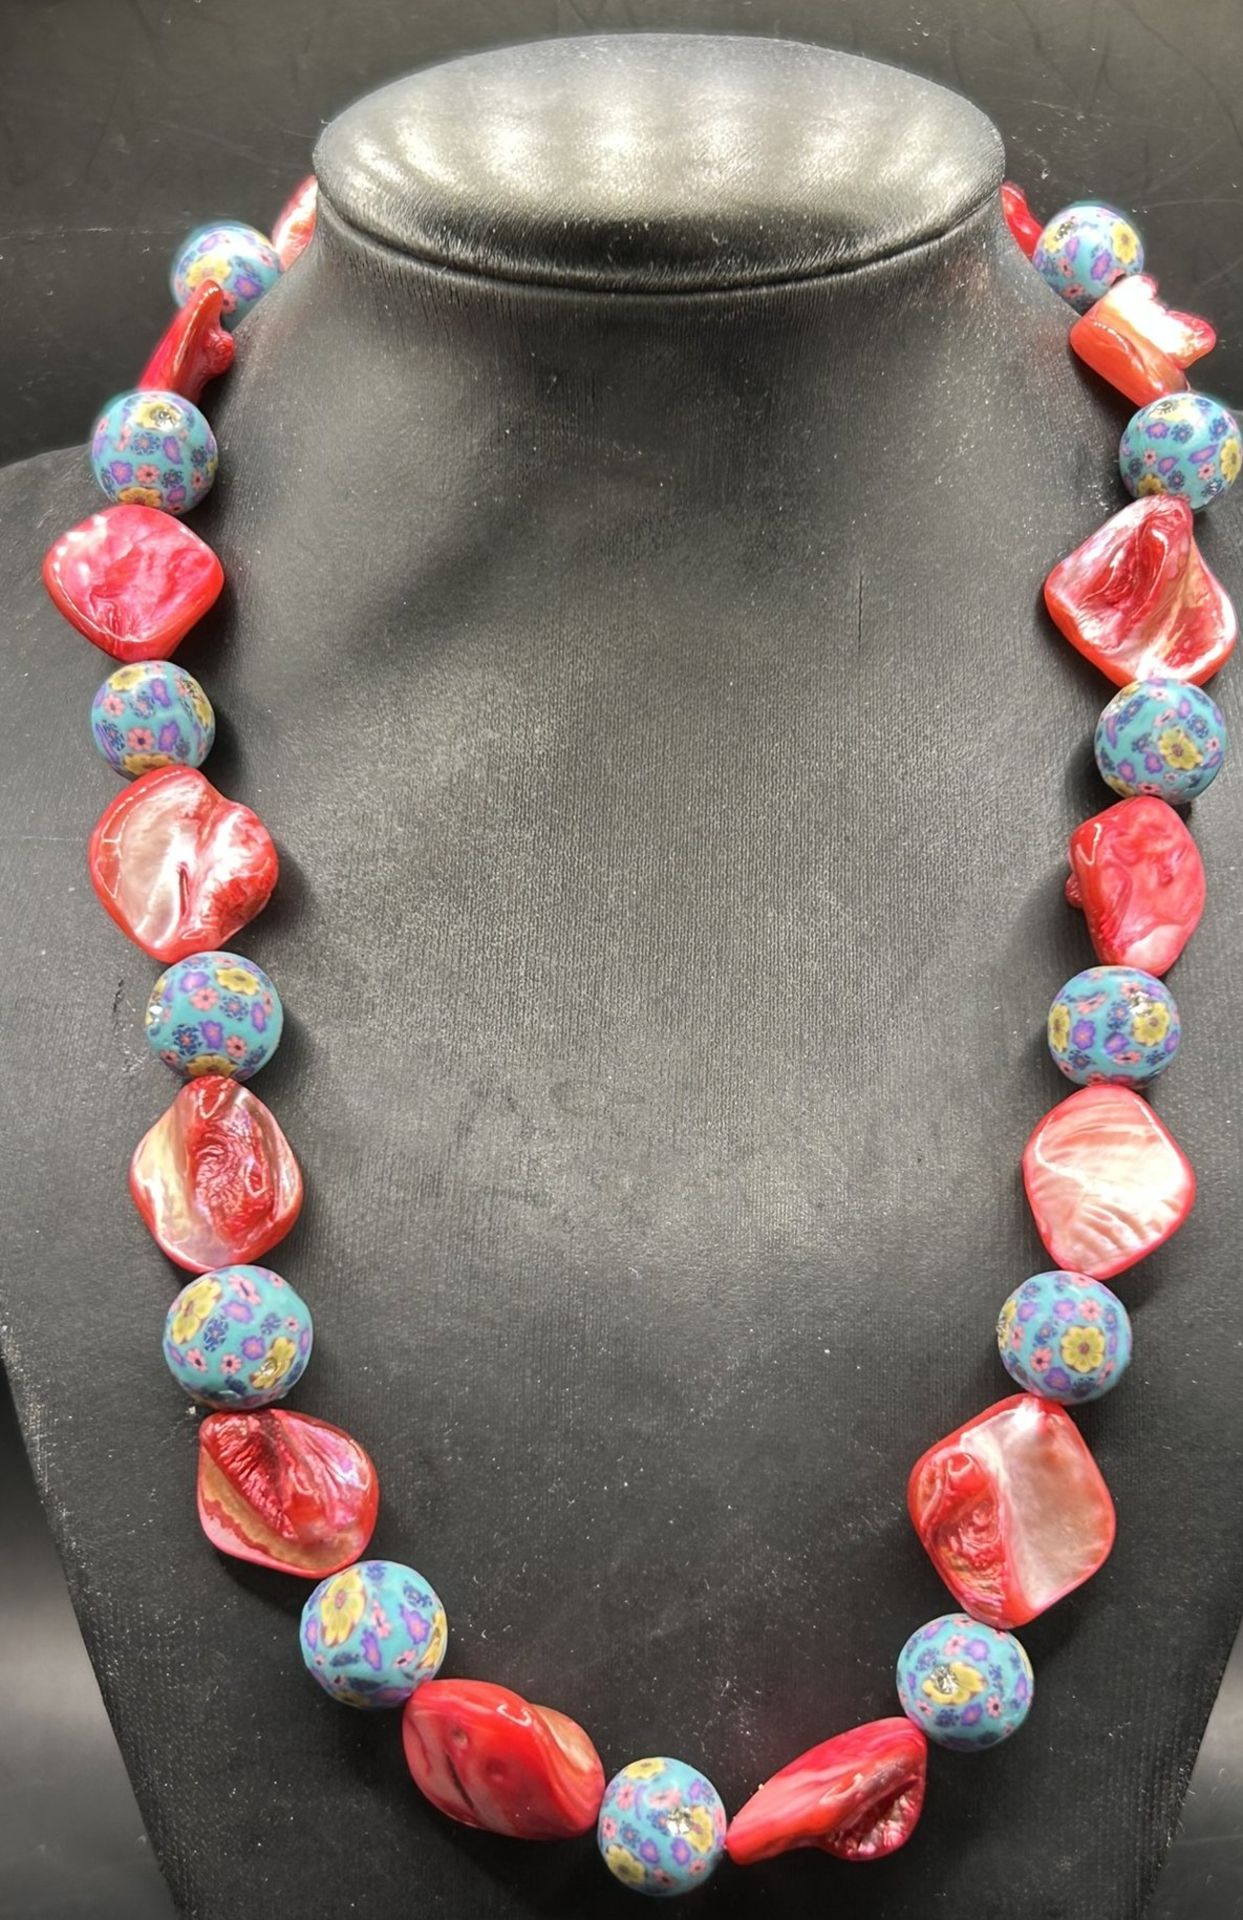 Halskette, rote Steine und Glaskugeln (Gablonz?), L-46 cm